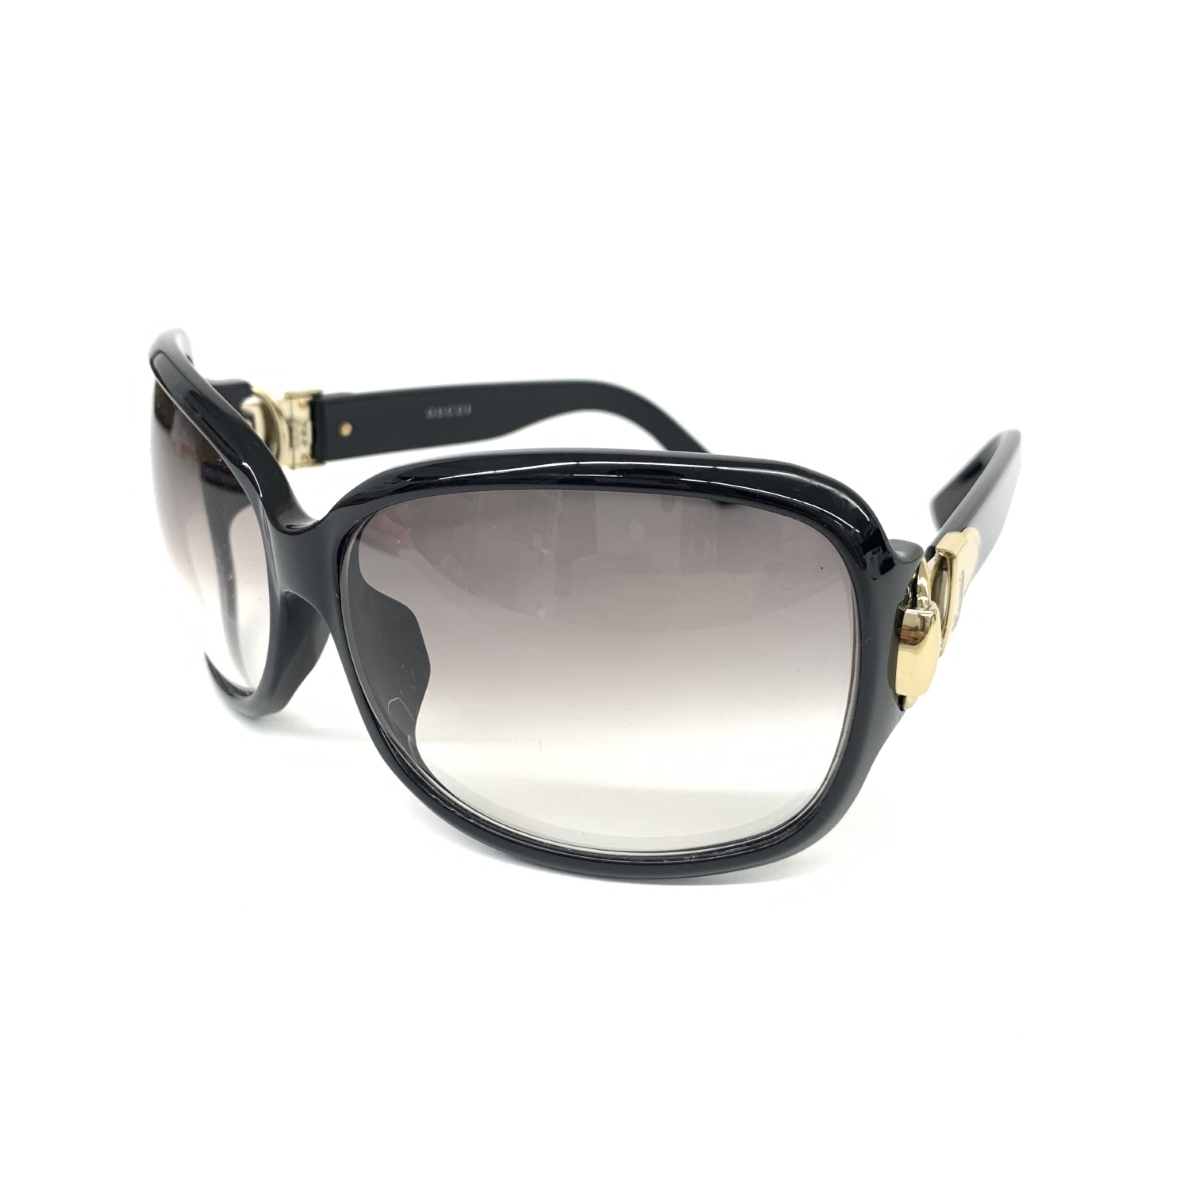 良好◆GUCCI グッチ サングラス◆GG2992 ブラック レディース メガネ 眼鏡 サングラス sunglasses 服飾小物